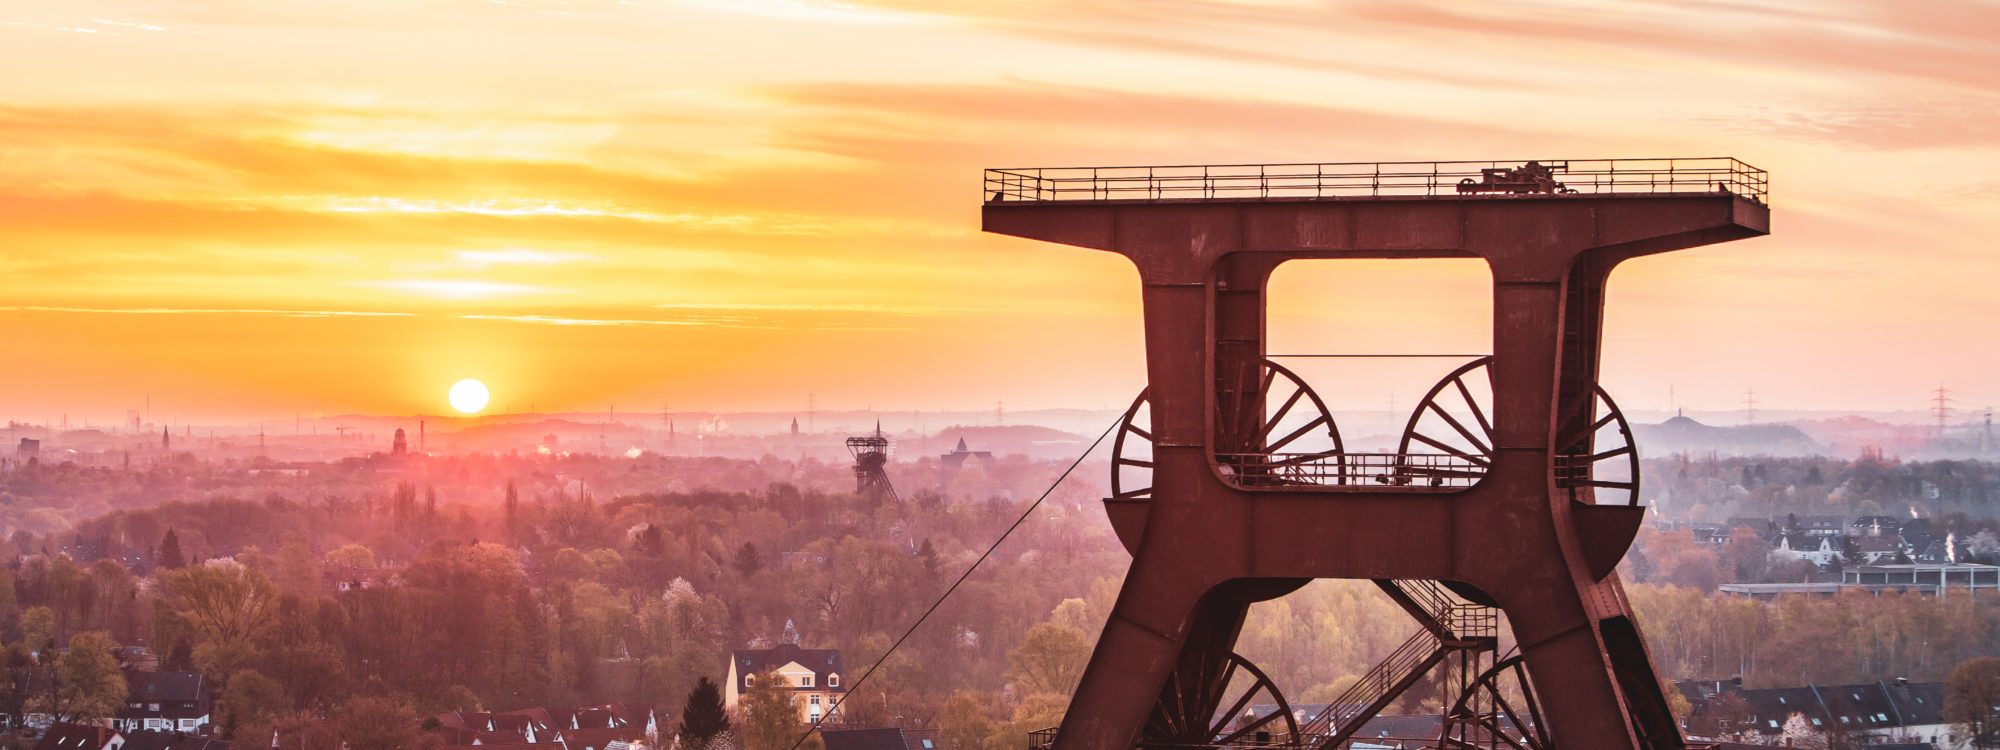 Das Foto zeigt das Fördergerüst des UNESCO-Welterbe Zollverein in Essen im Sonnenuntergang